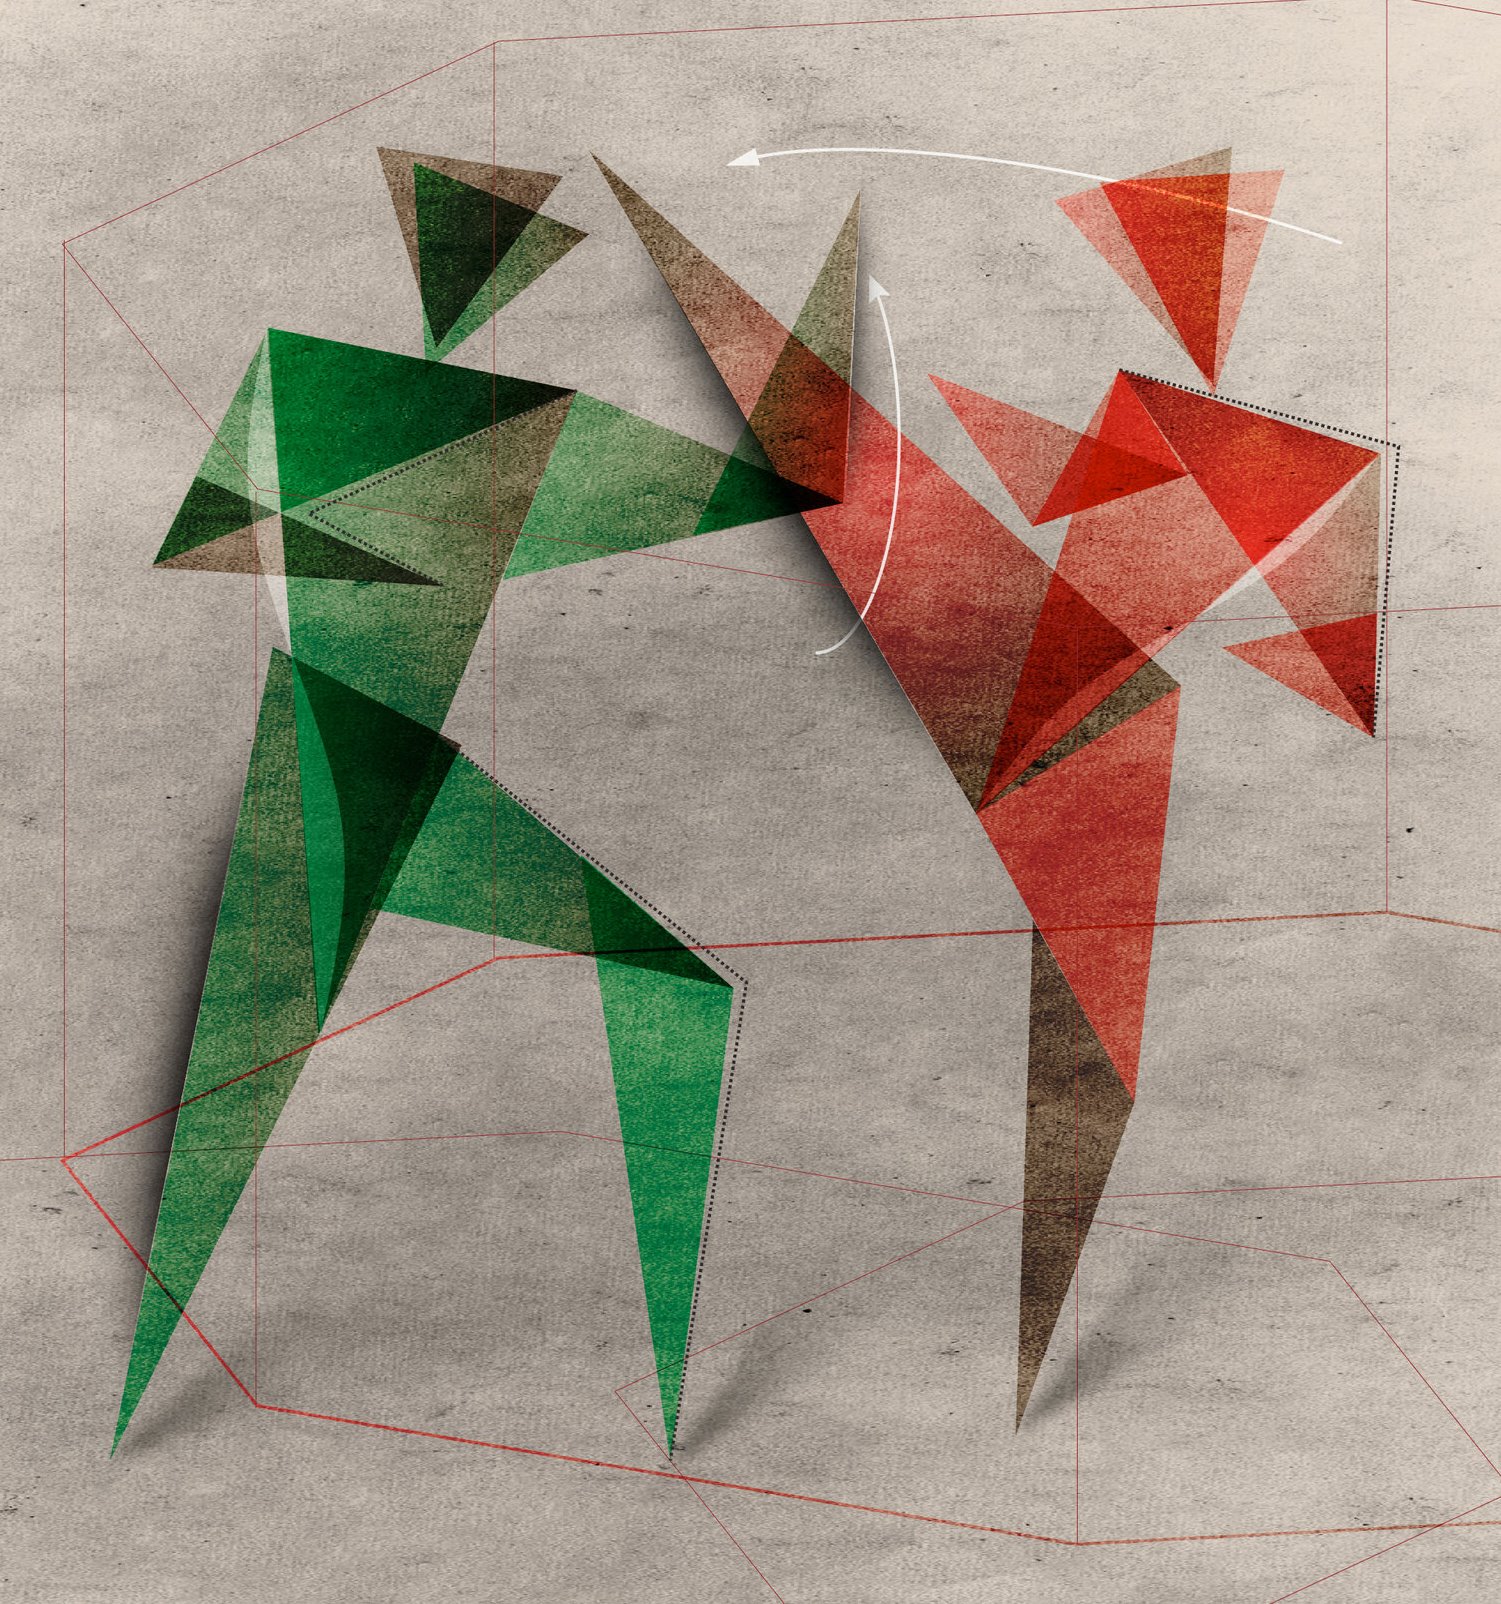 Das Bild zeigt zwei kämpfende Figuren. Eine in rot, die andere in grün gehalten. Der jeweilige gesamte Köper wird in unterschiedlich angeordneten Dreiecken dargestellt. Das Bild wurde als Motiv für die Info-Papiere von Vollkontakt gewählt.